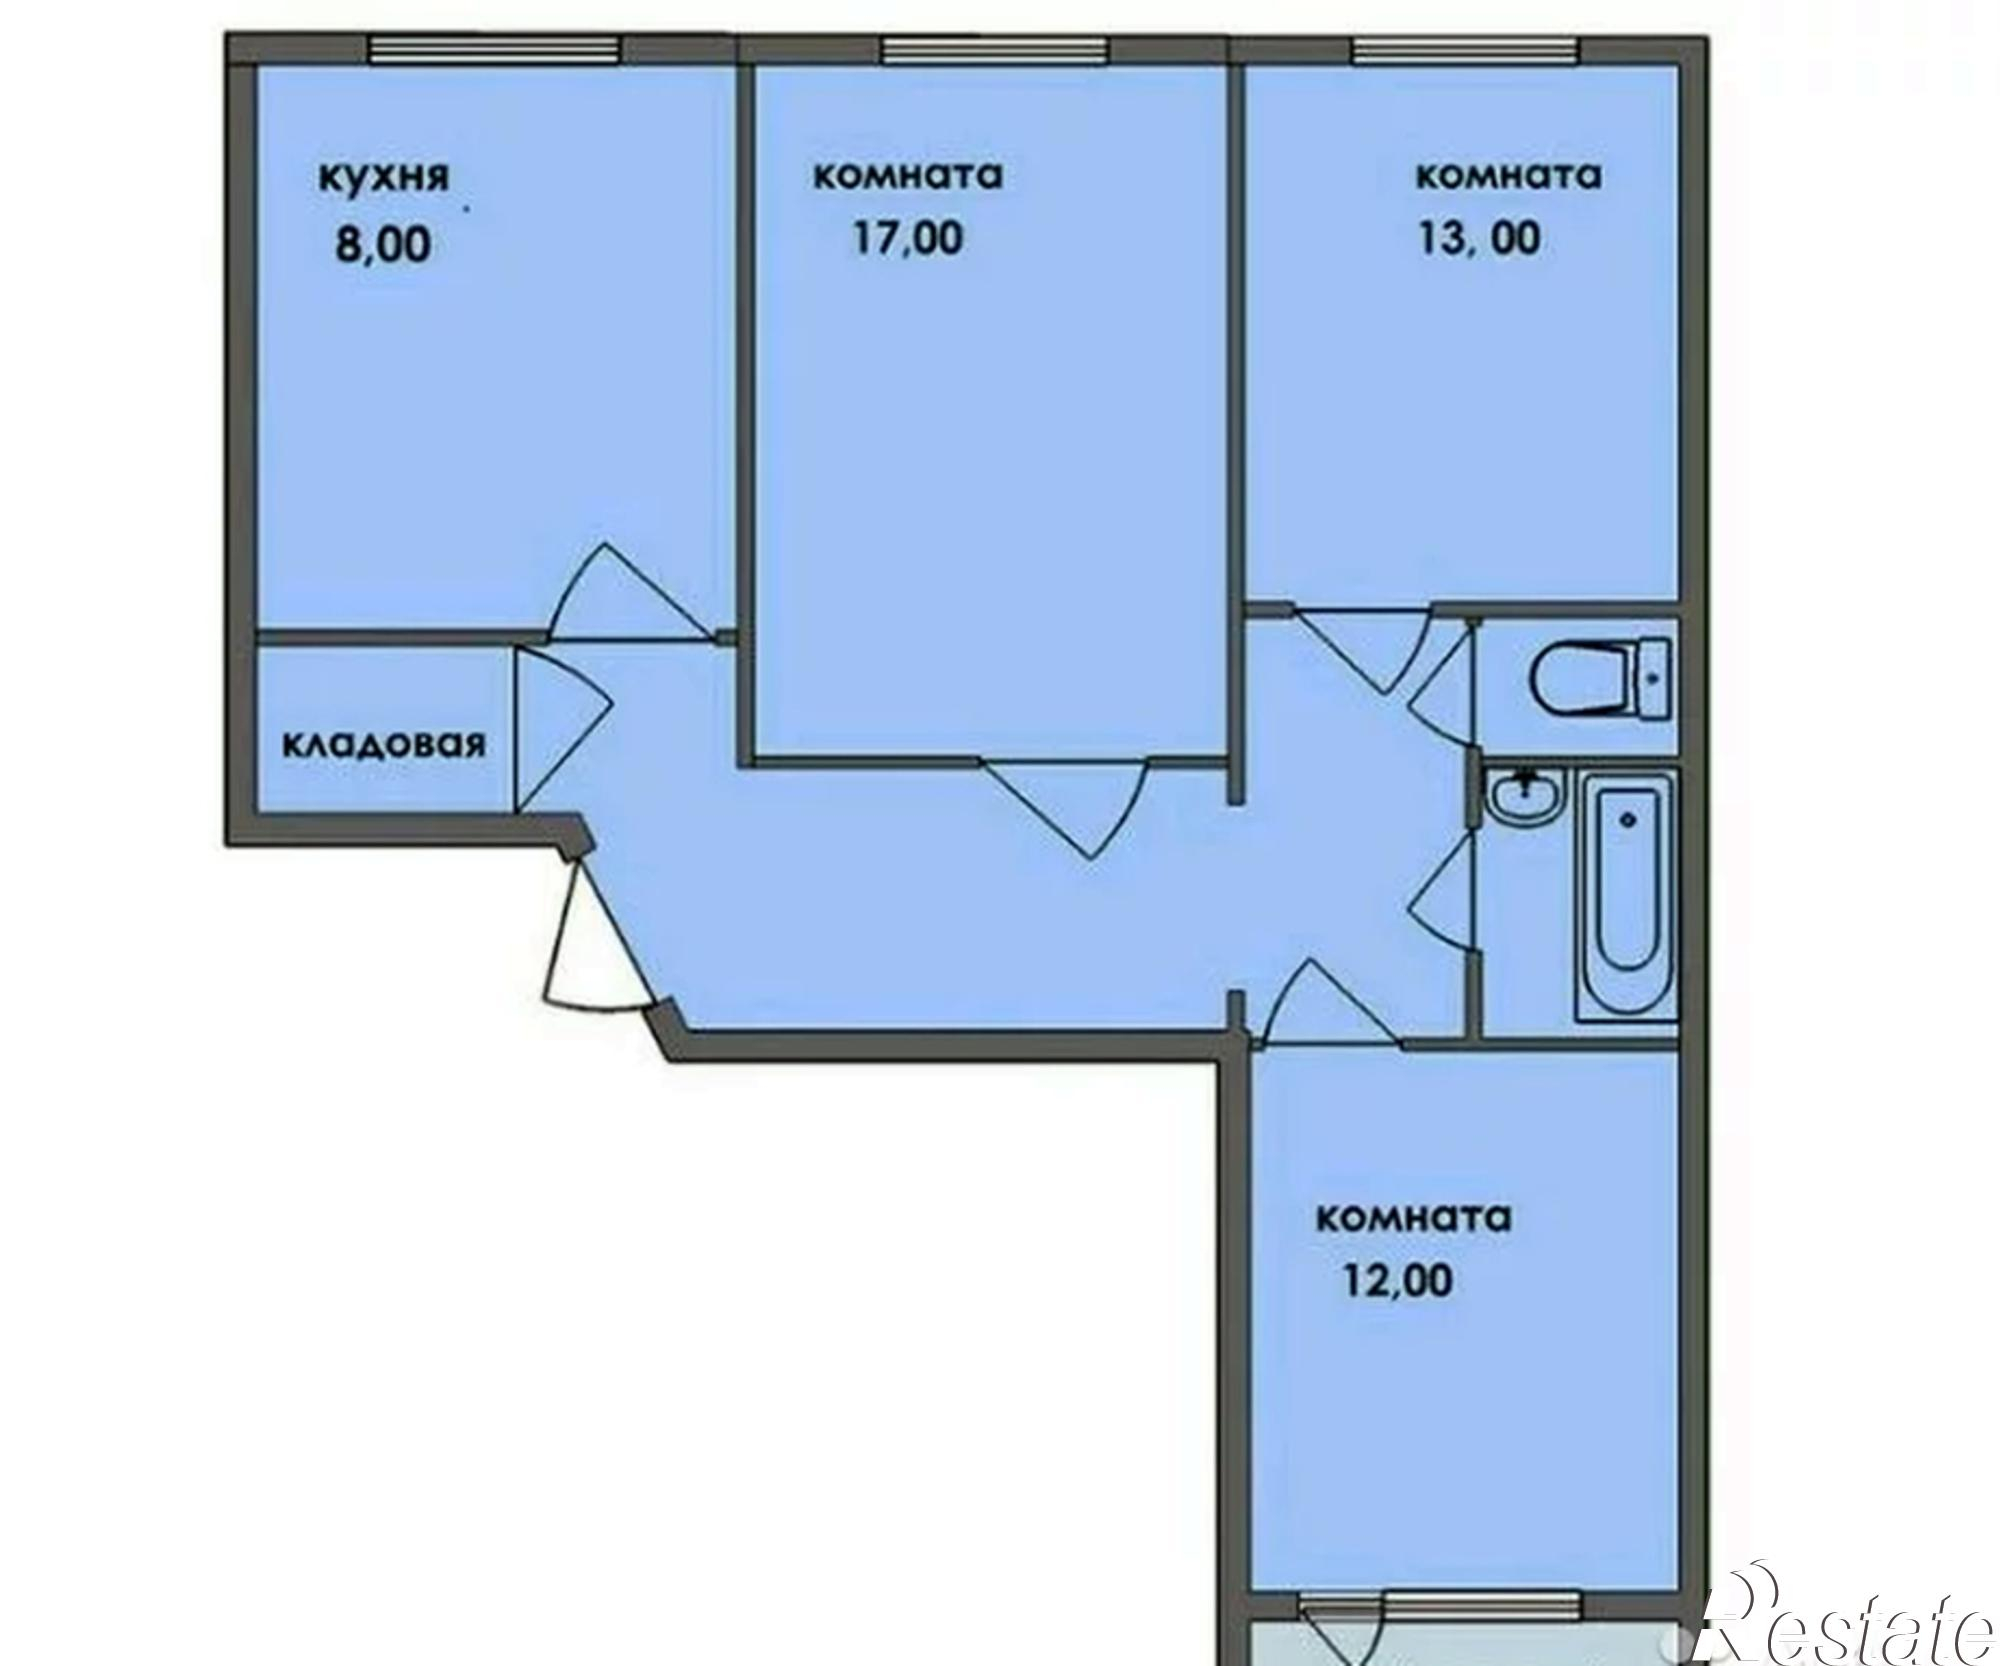 Комсомольский трехкомнатная купить. Планировка 3 х комнатной квартиры в 9 этажном. Планировка 3-х комнатной квартиры в панельном доме 9.